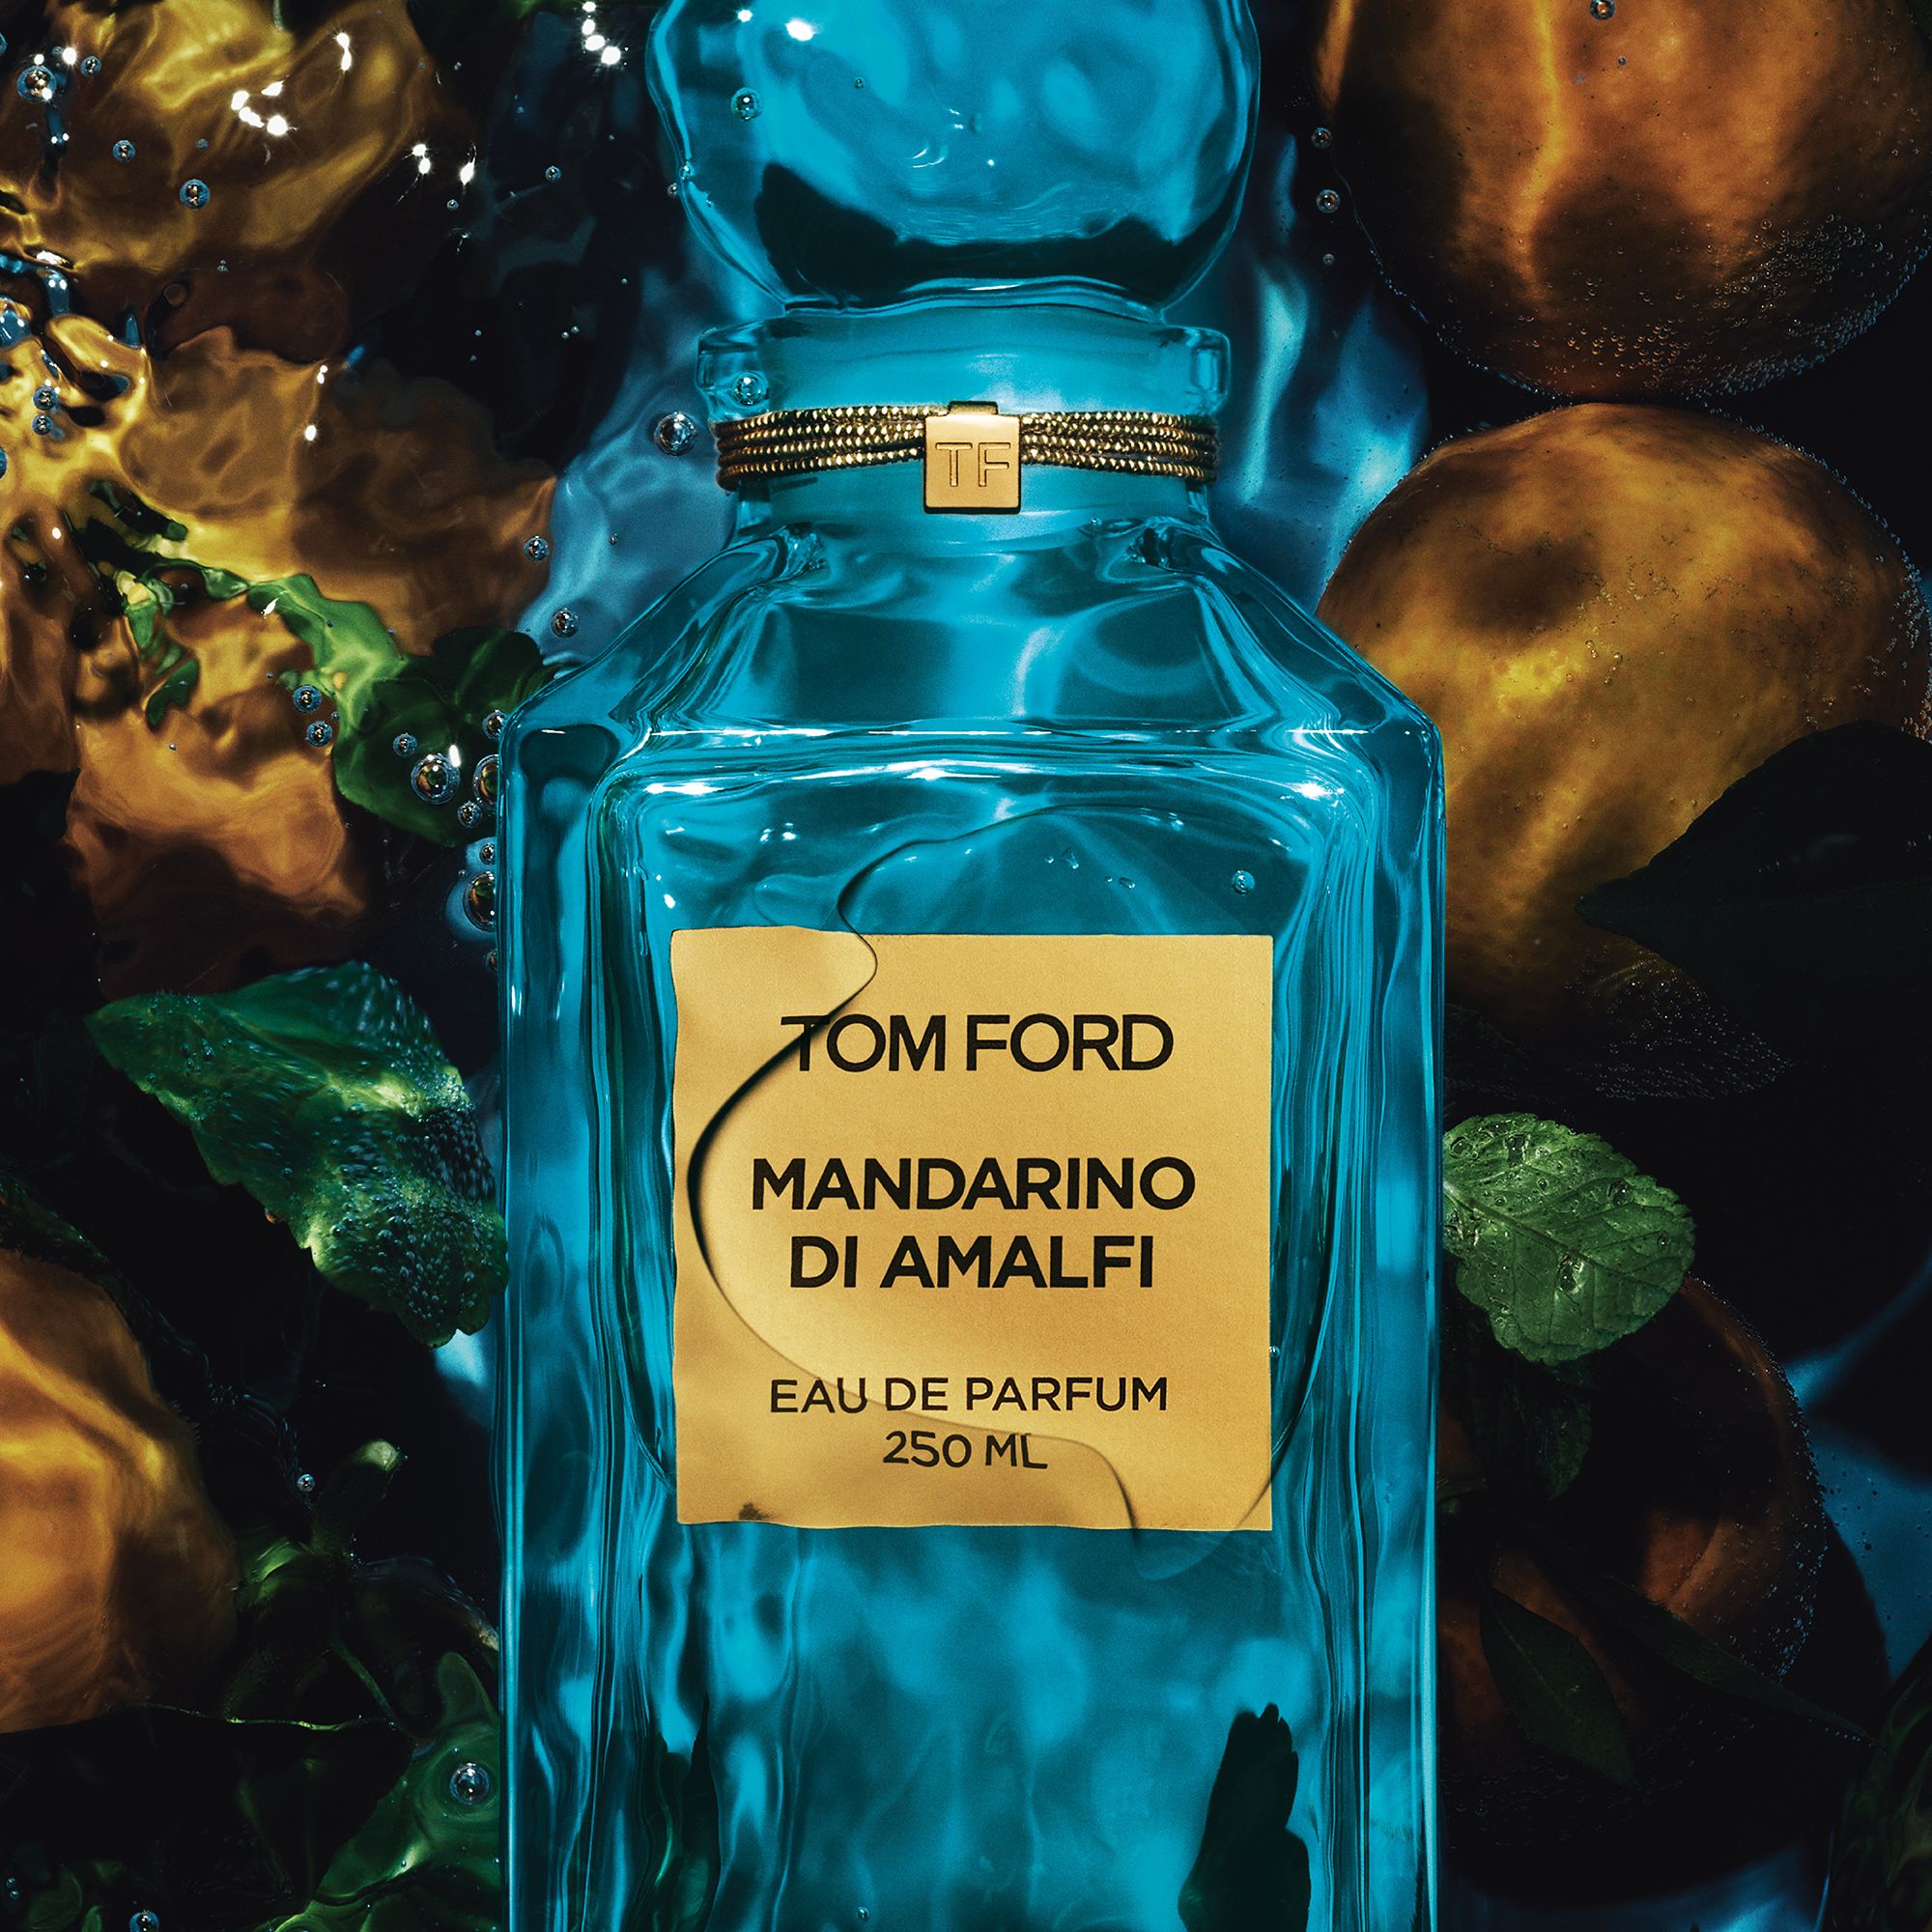 TOM FORD Private Blend Mandarino Di Amalfi Eau de Parfum, 50ml